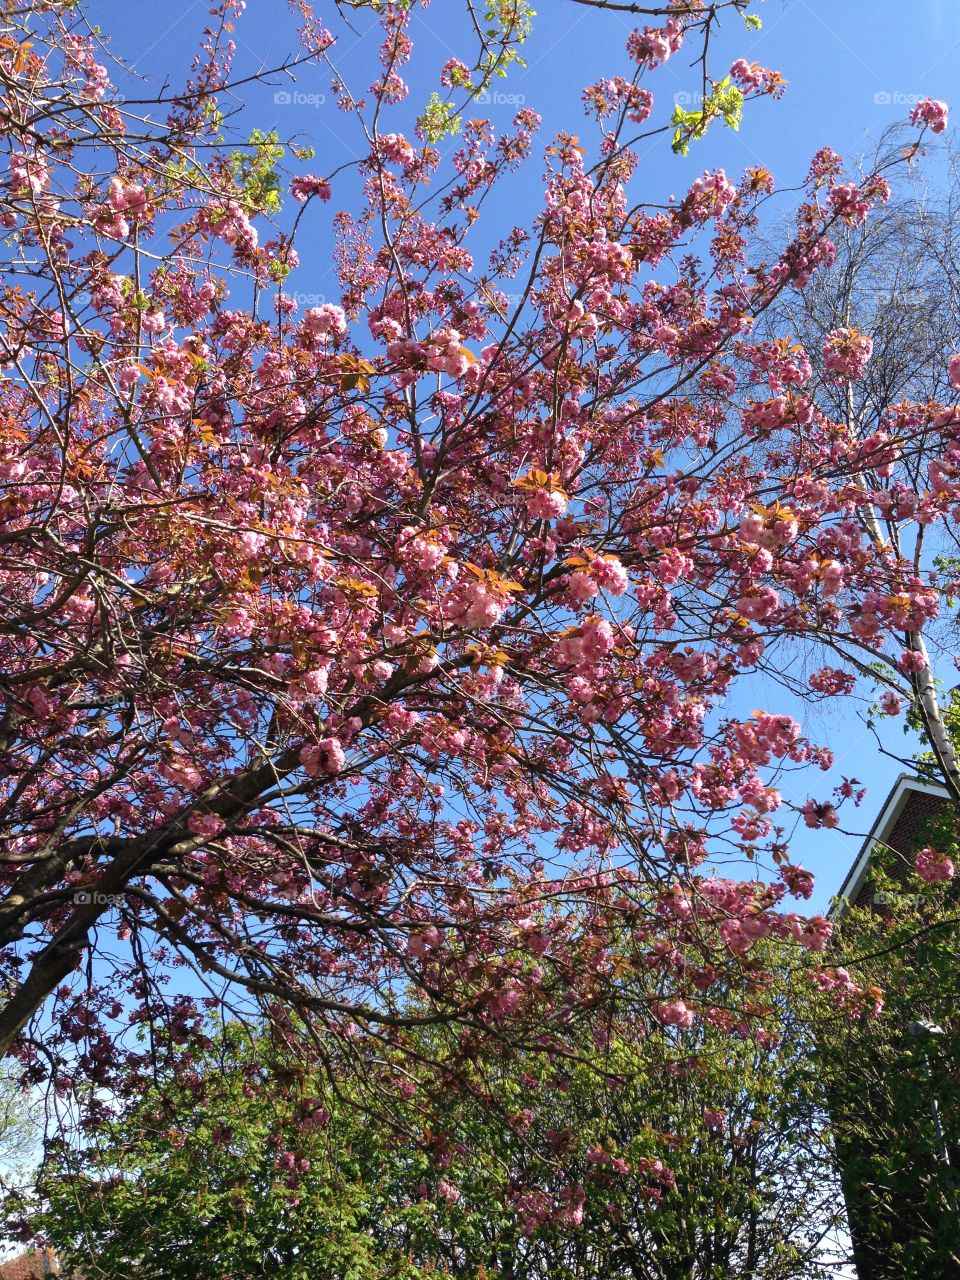 Blooming flowering tree. Pink flowers on the tree